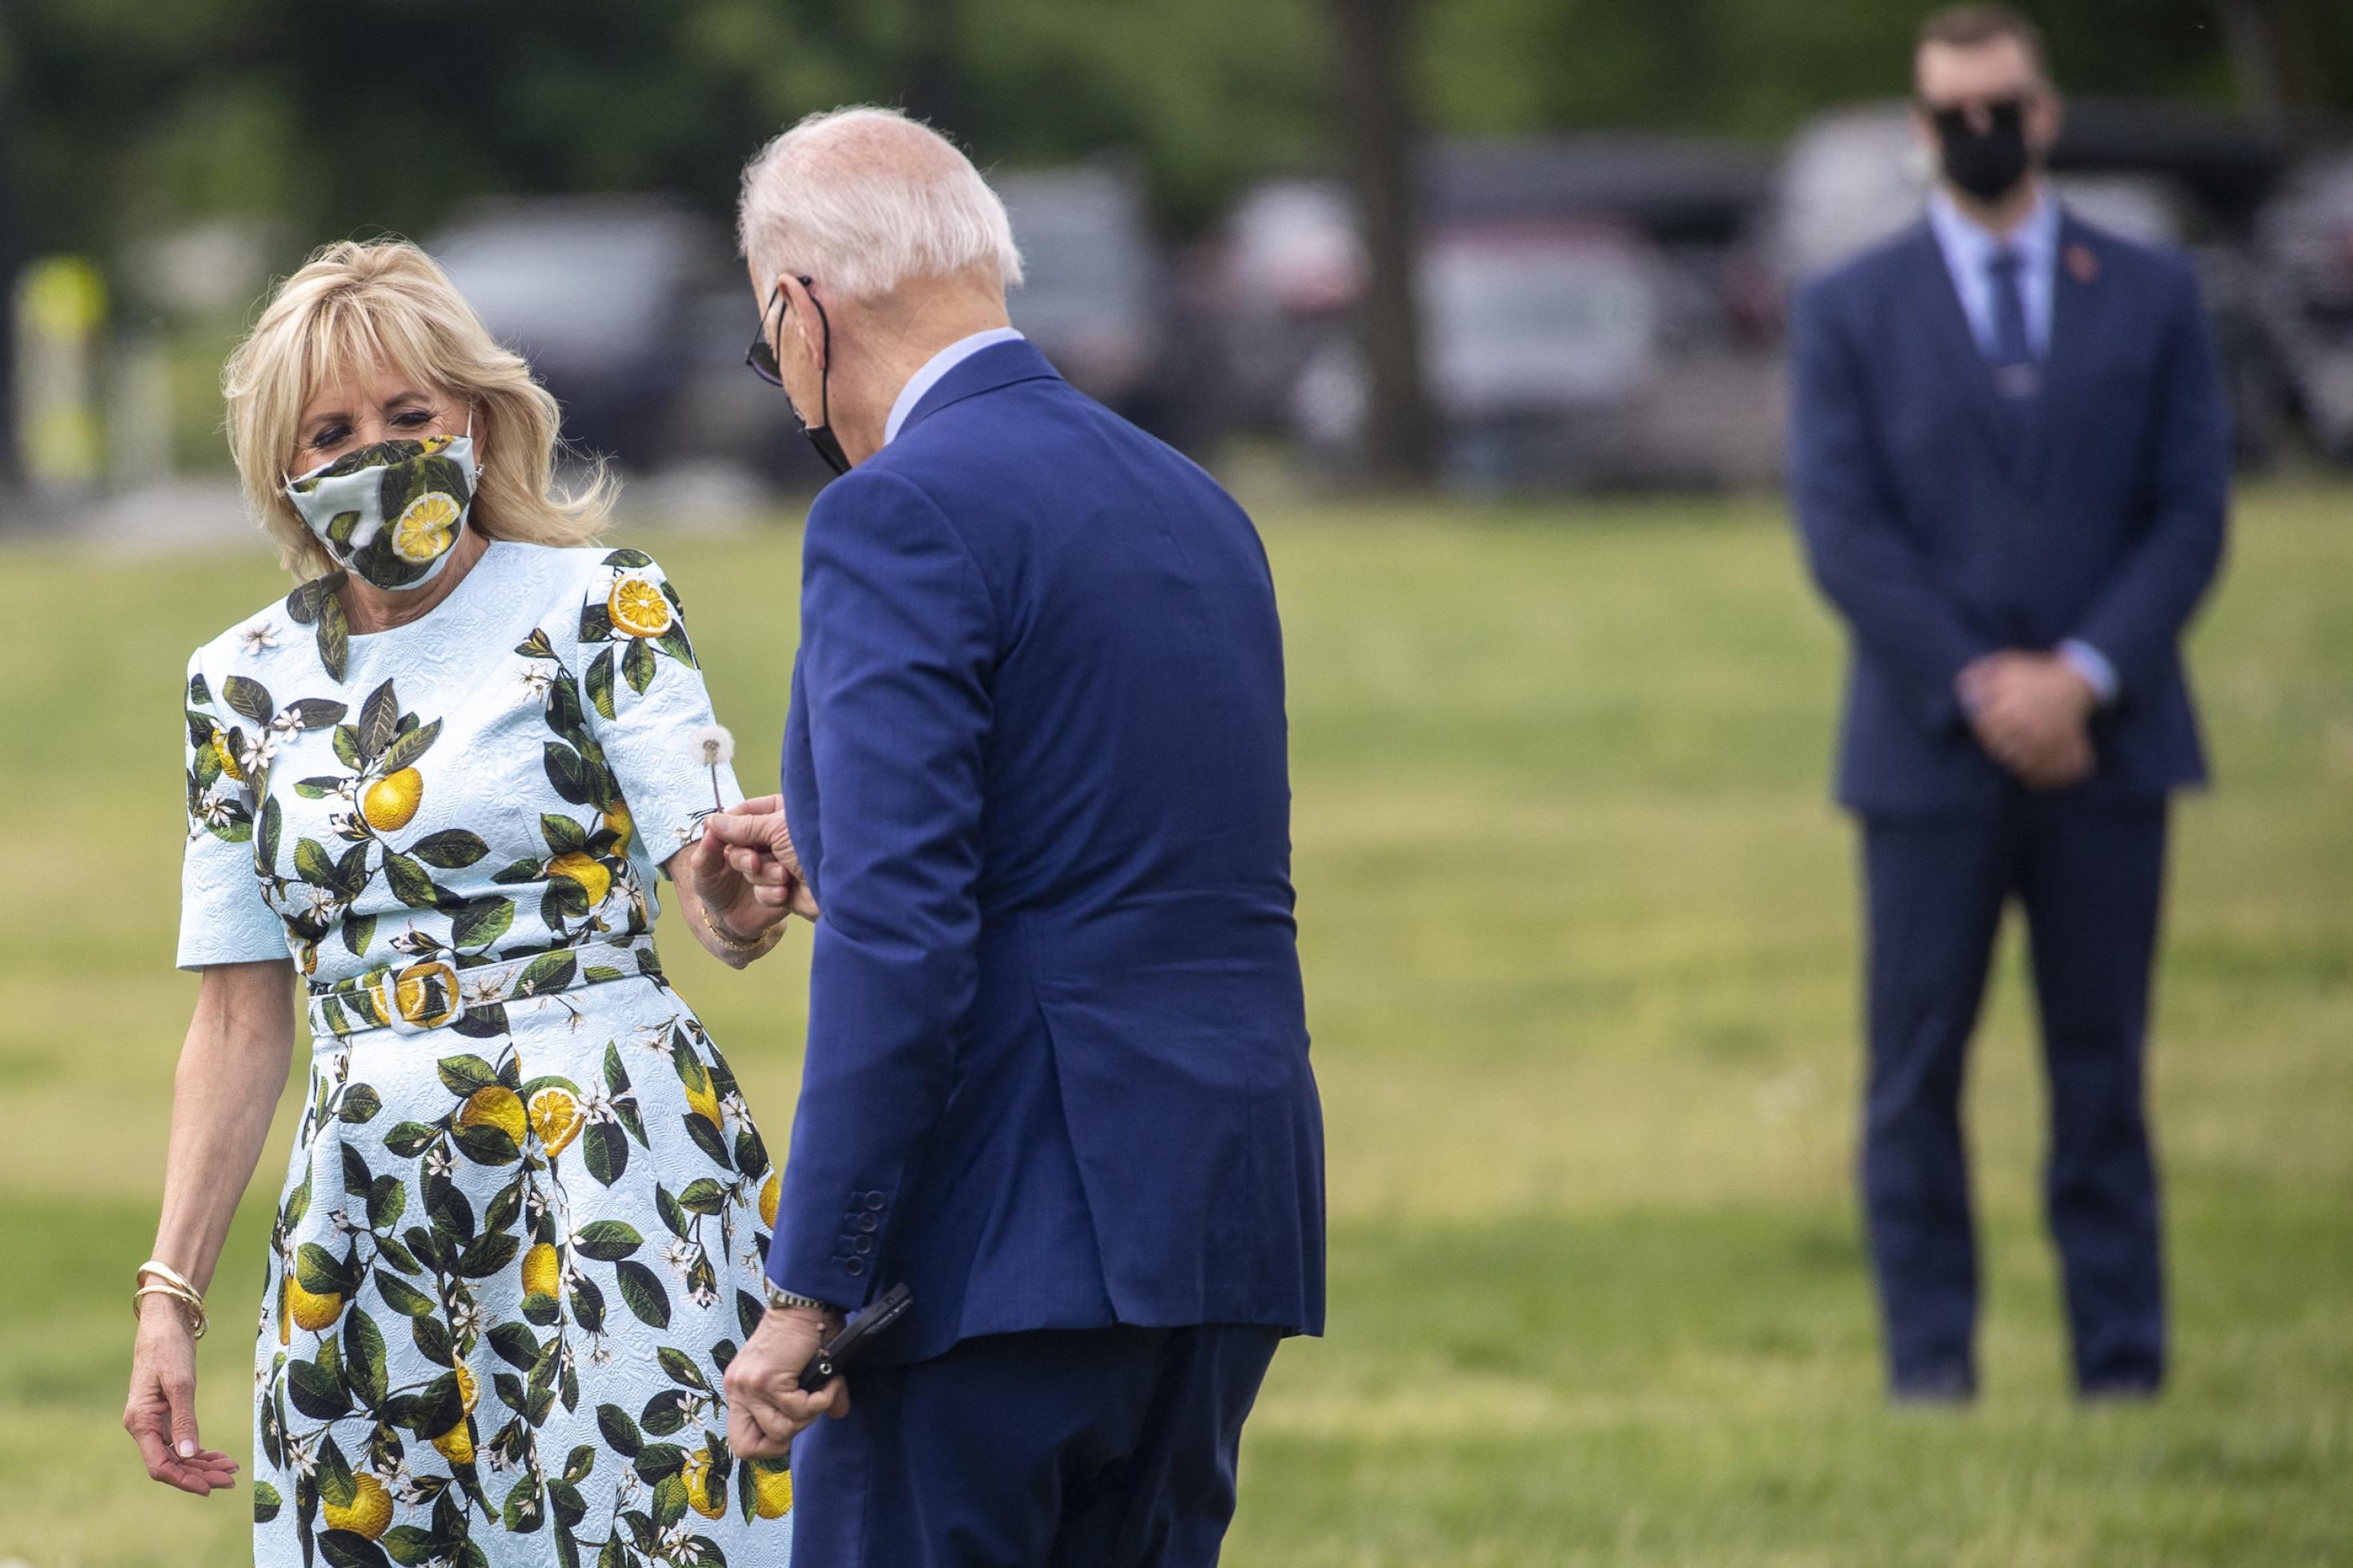 US-Präsident Joe Biden reicht seiner Frau eine Löwenzahnpflanze, die er für sie gepflückt hat. Jill Bidens Kleid ist mit Blättern und Zitronen bedruckt.